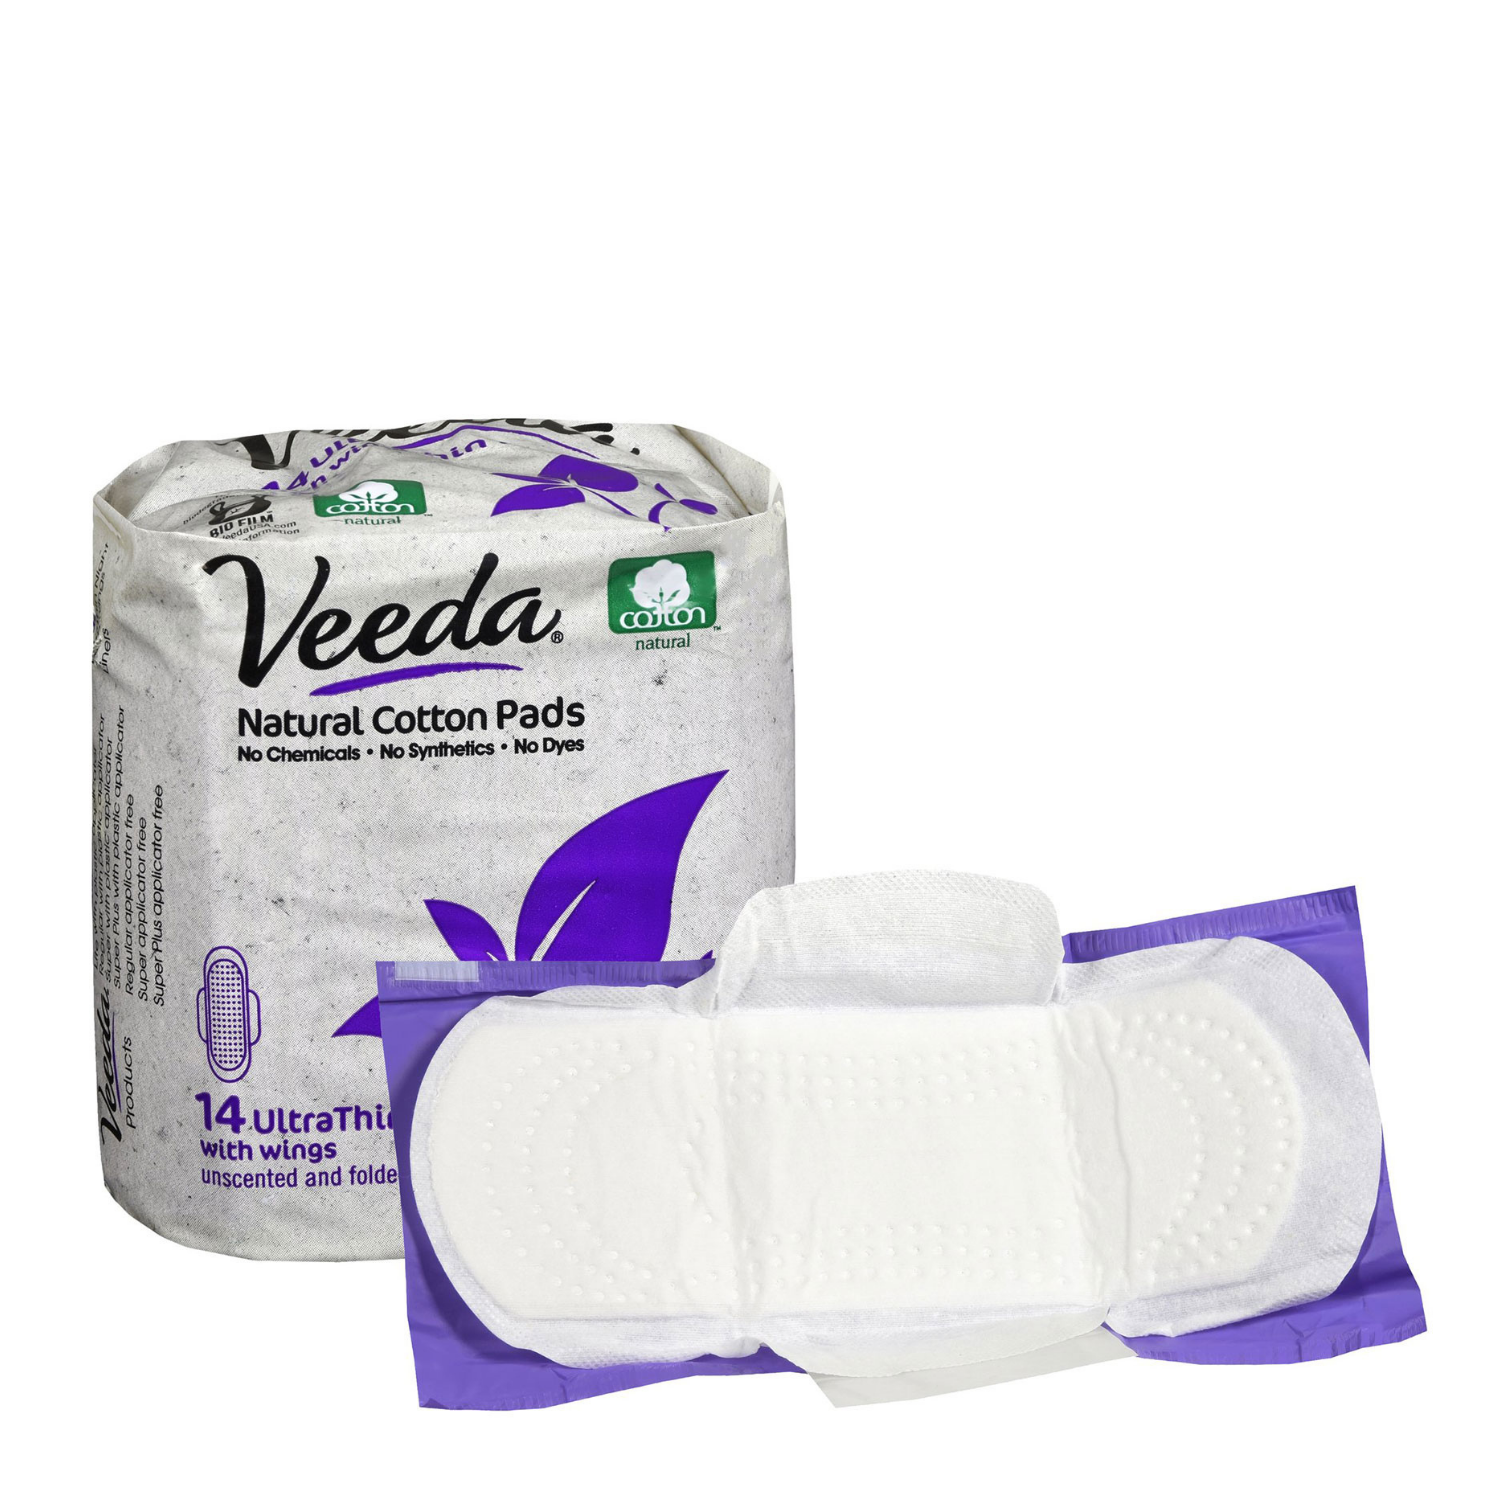 Buy Veeda Natural Cotton Ultra-Thin Day Pads at